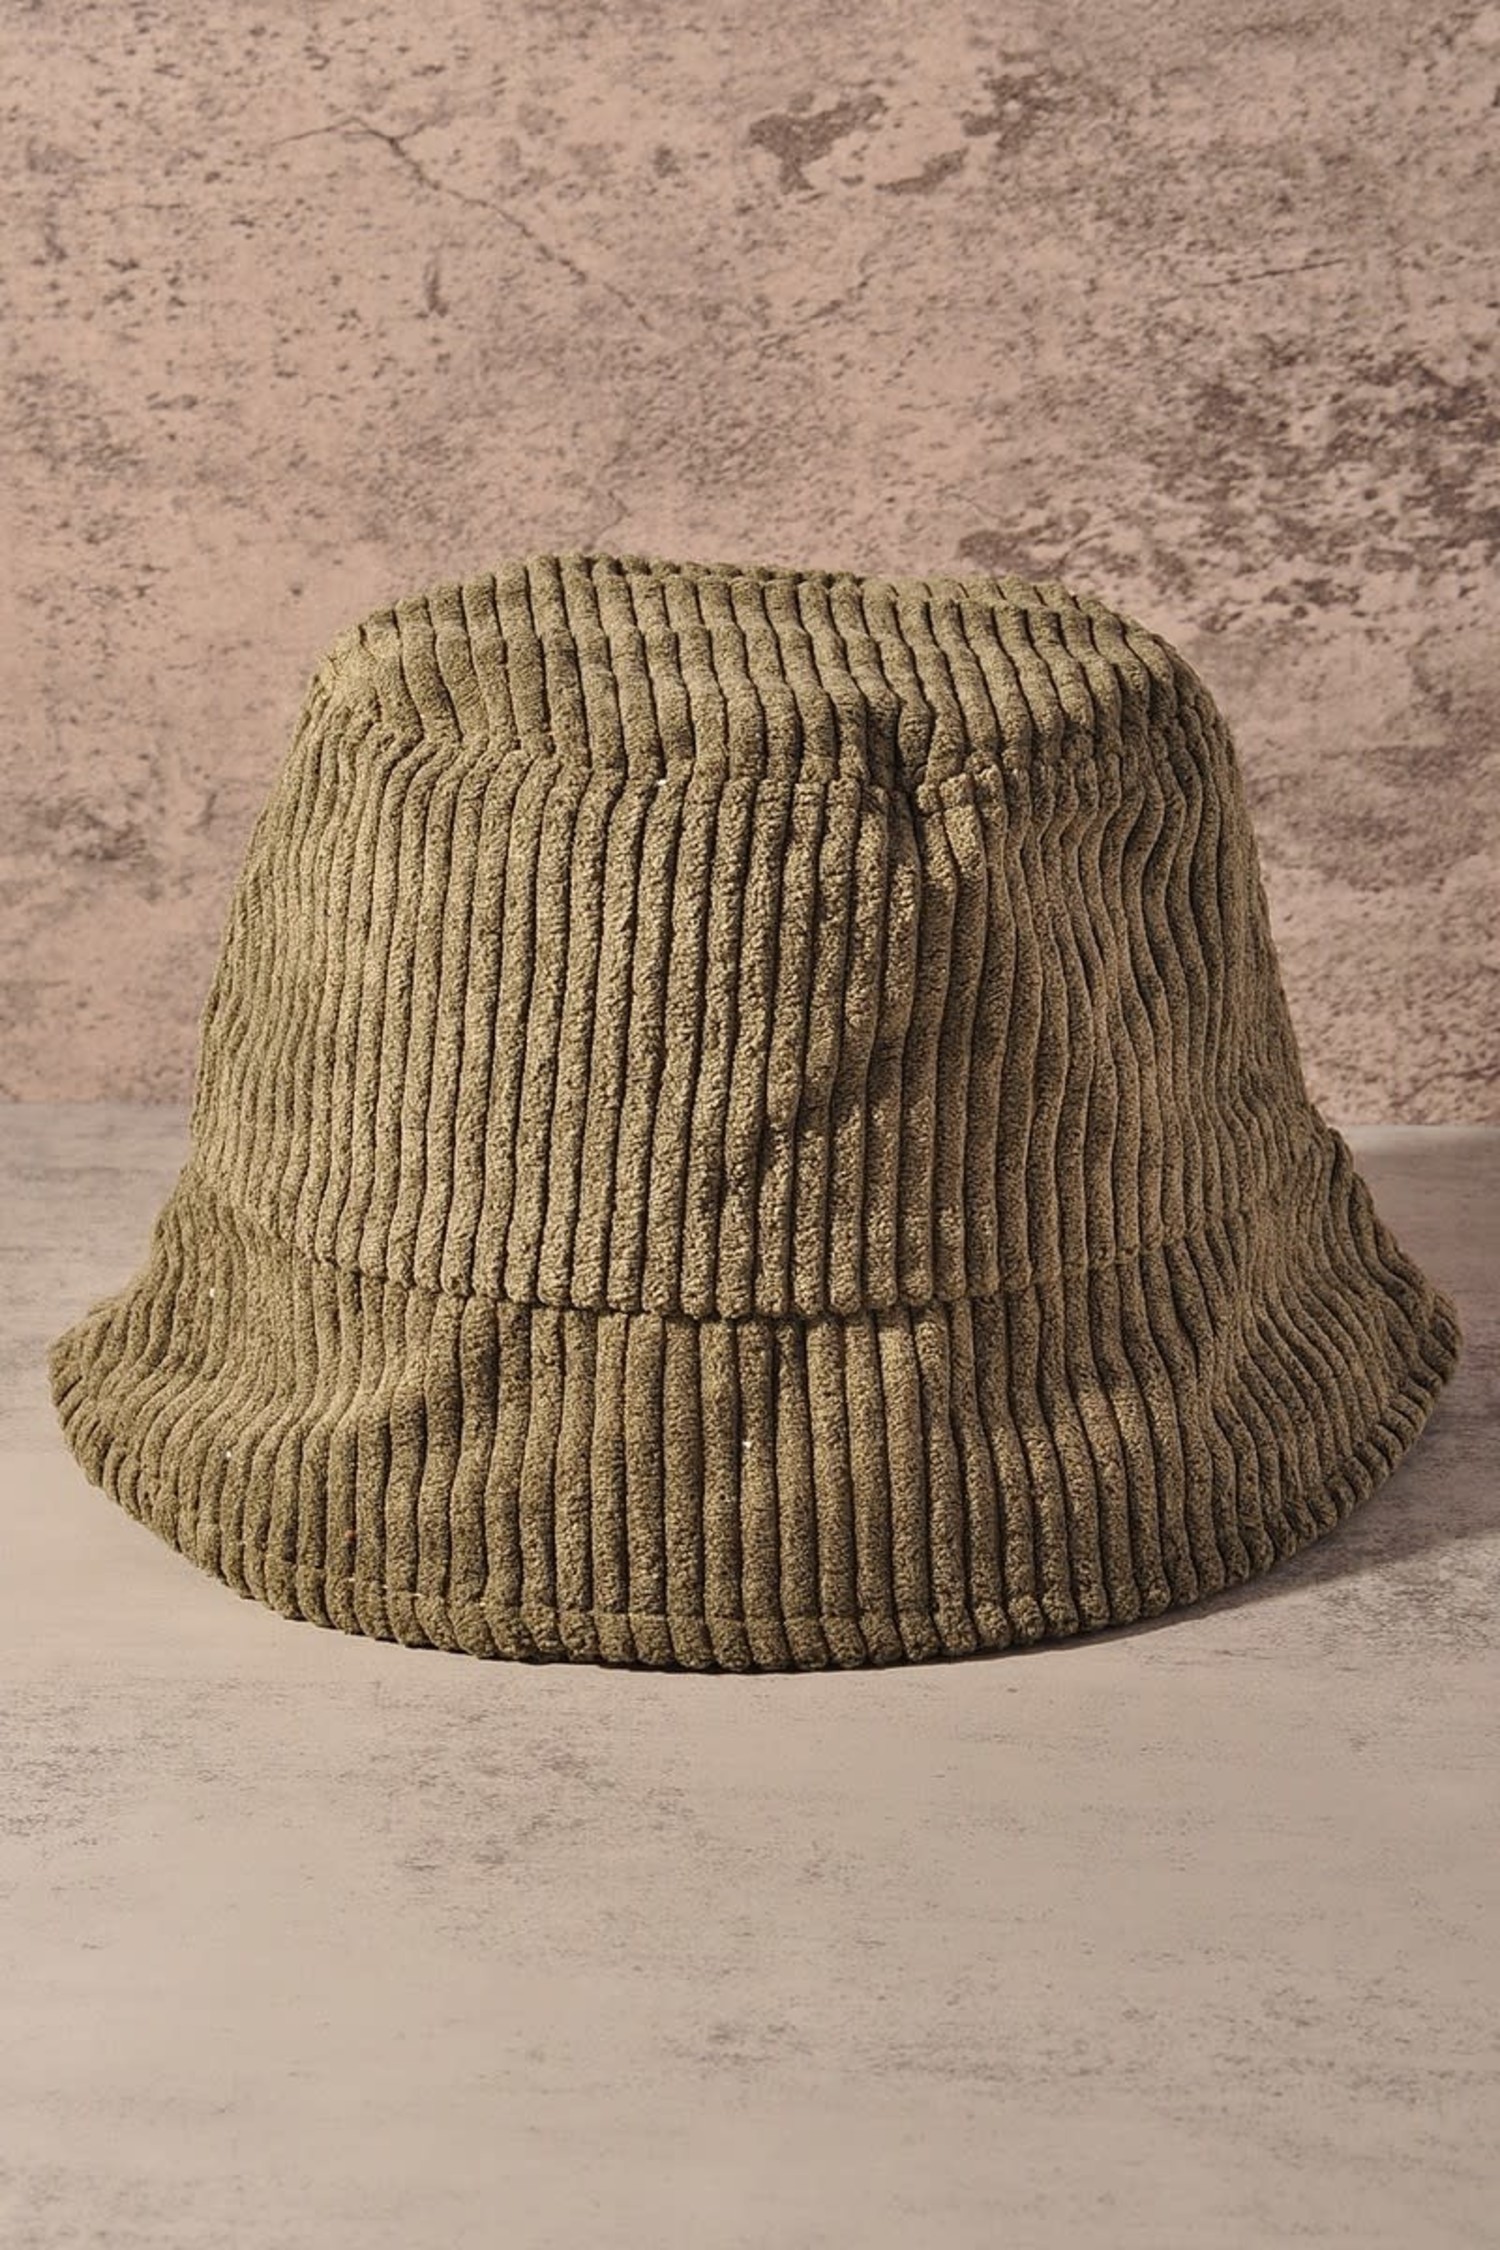 Merveille Corduroy Bucket Hat